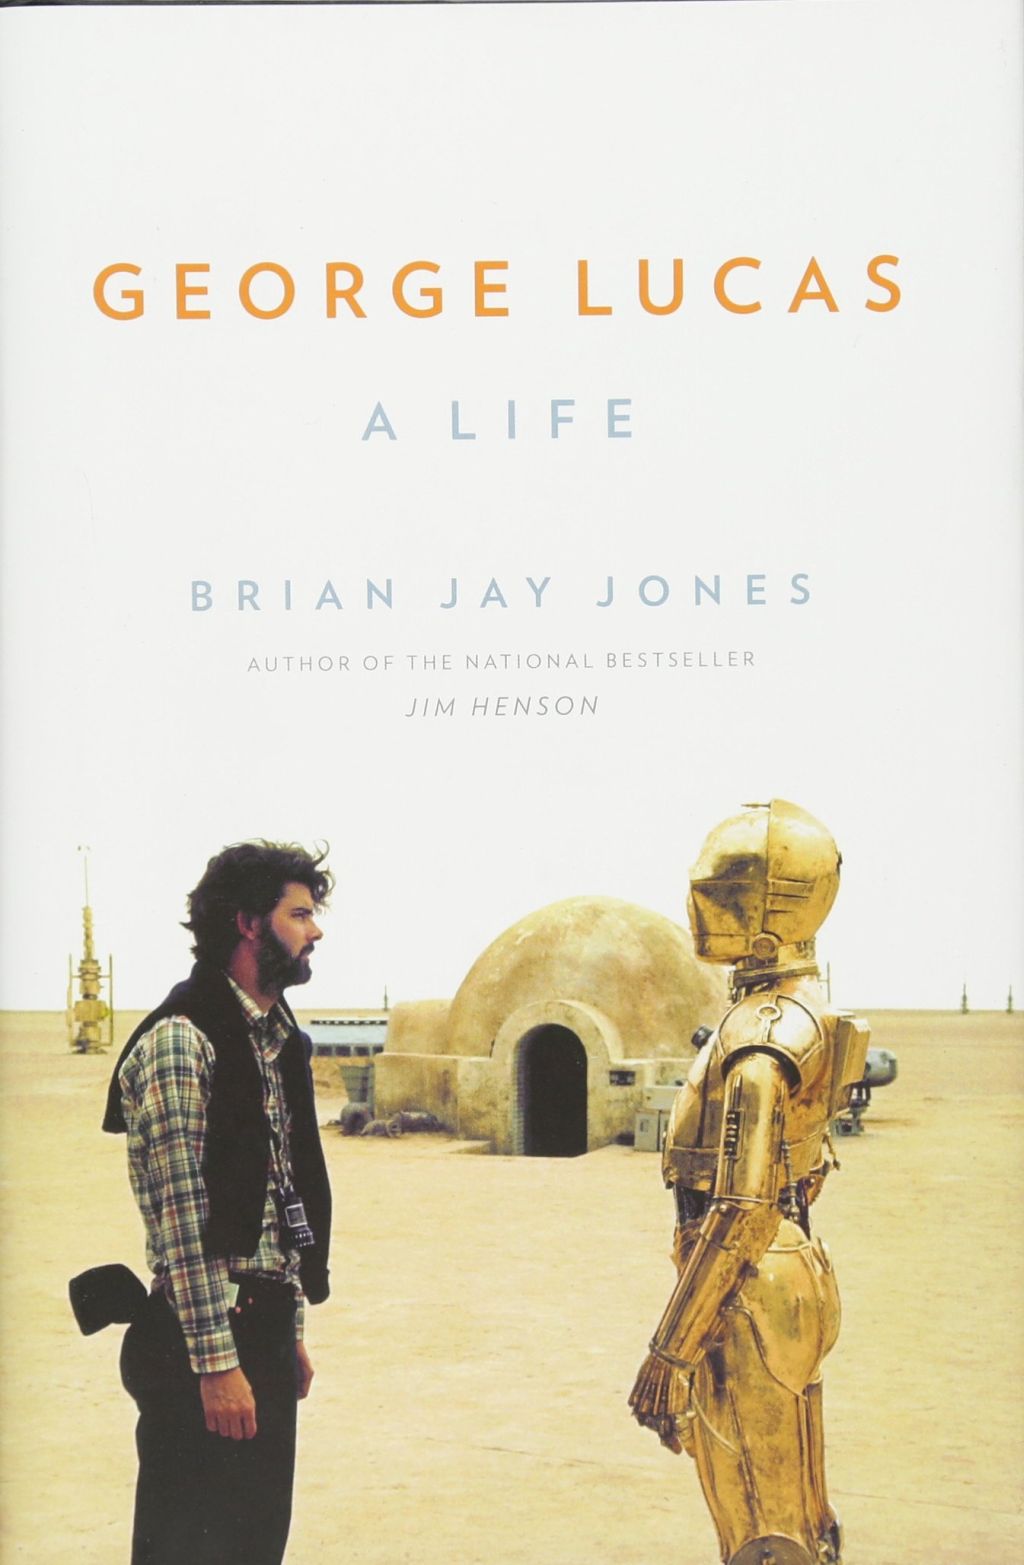 Okładka wydania oryginalnego - George Lucas: A Life.